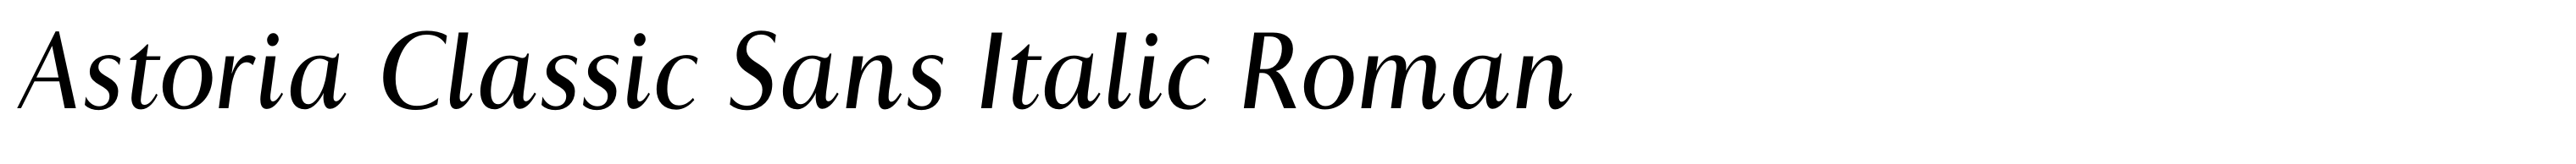 Astoria Classic Sans Italic Roman